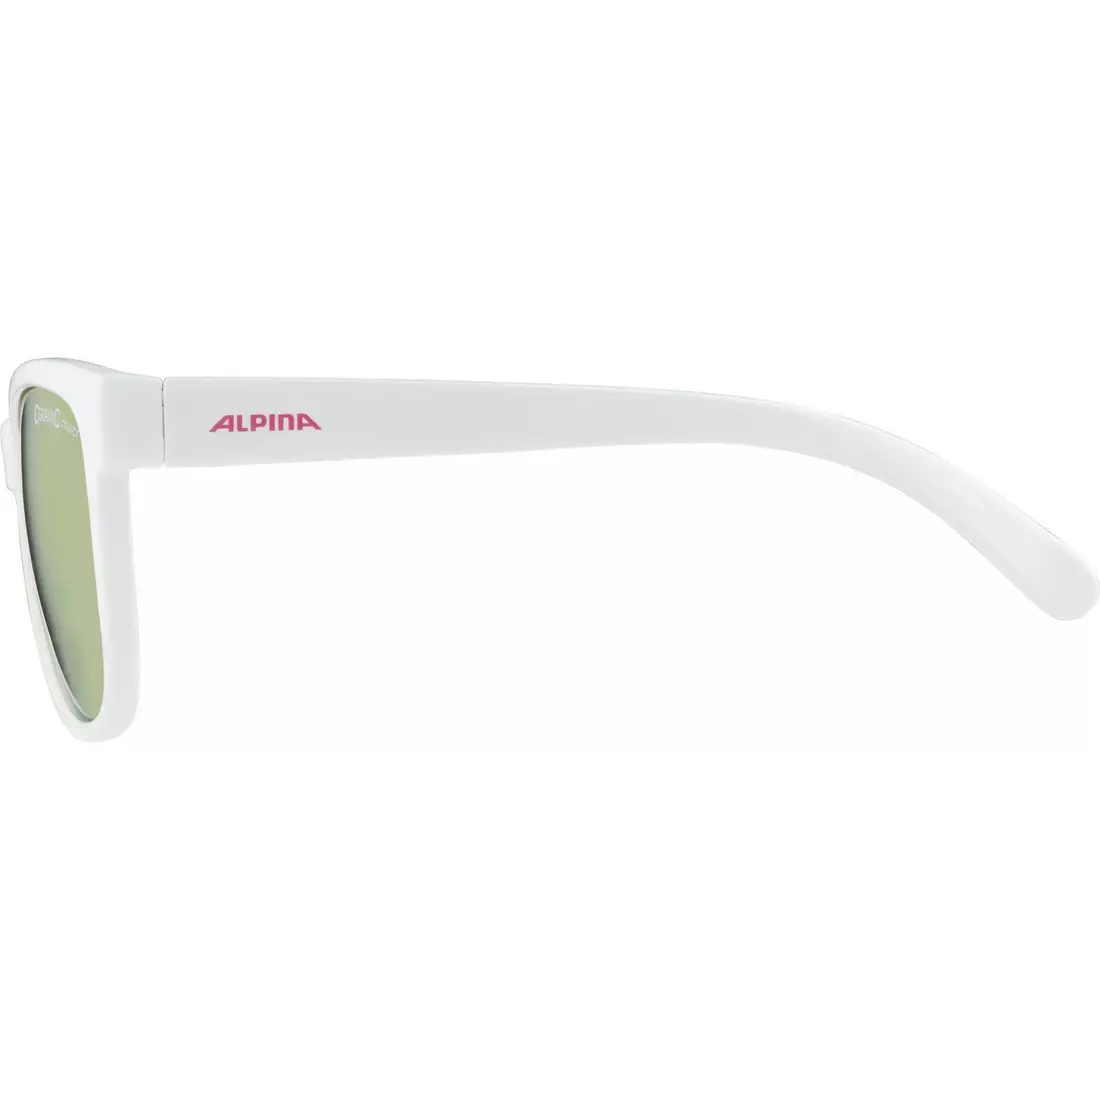 ALPINA JUNIOR LUZY Fahrrad-/Sportbrille, white gloss